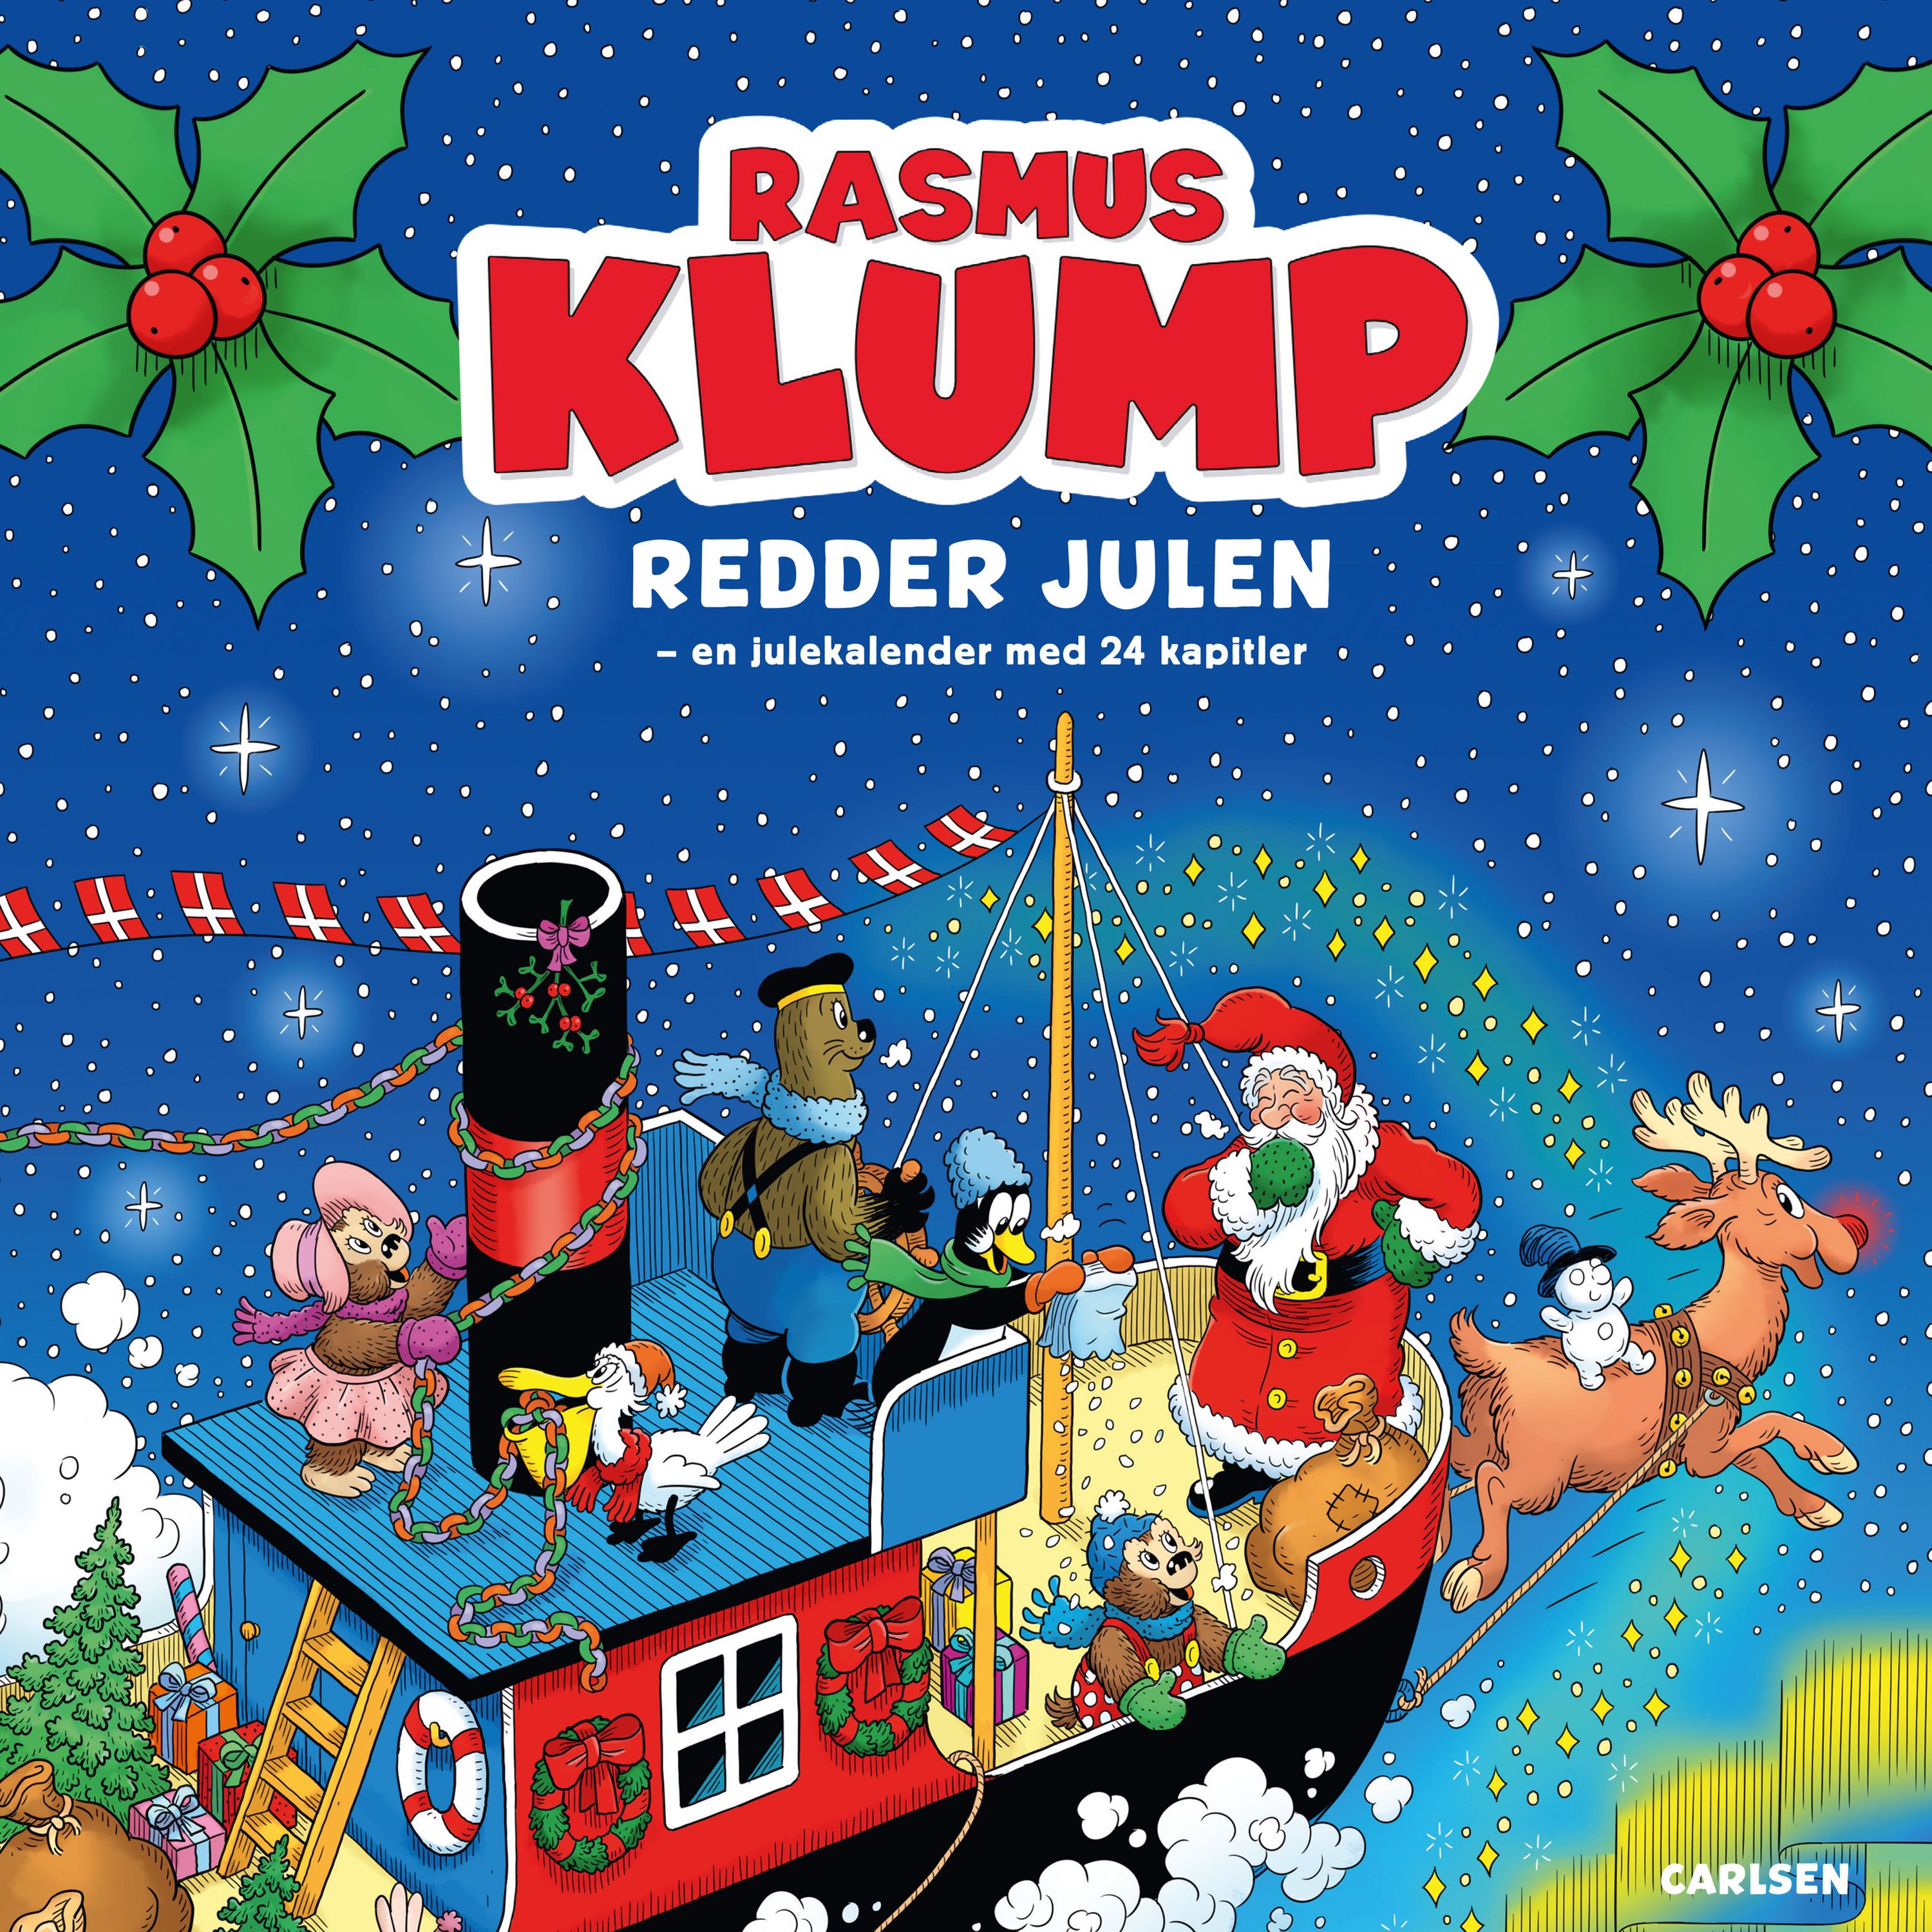 Rasmus Klump redder julen, ljudbok av Kim Langer